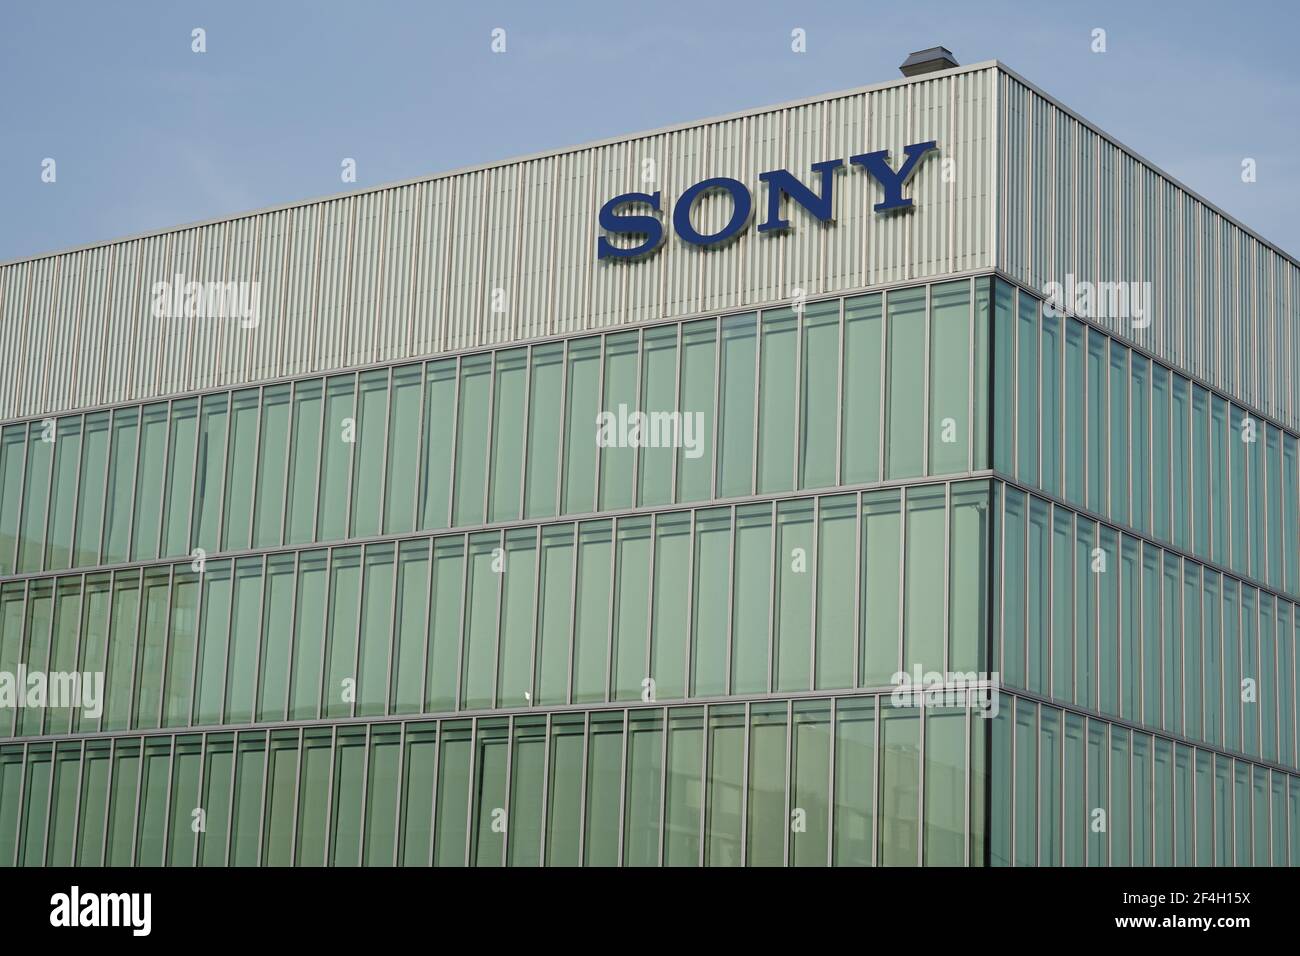 Sede centrale di Sony in Svizzera, edificio con nome dell'azienda. Questa azienda giapponese produce prodotti elettronici. Foto Stock